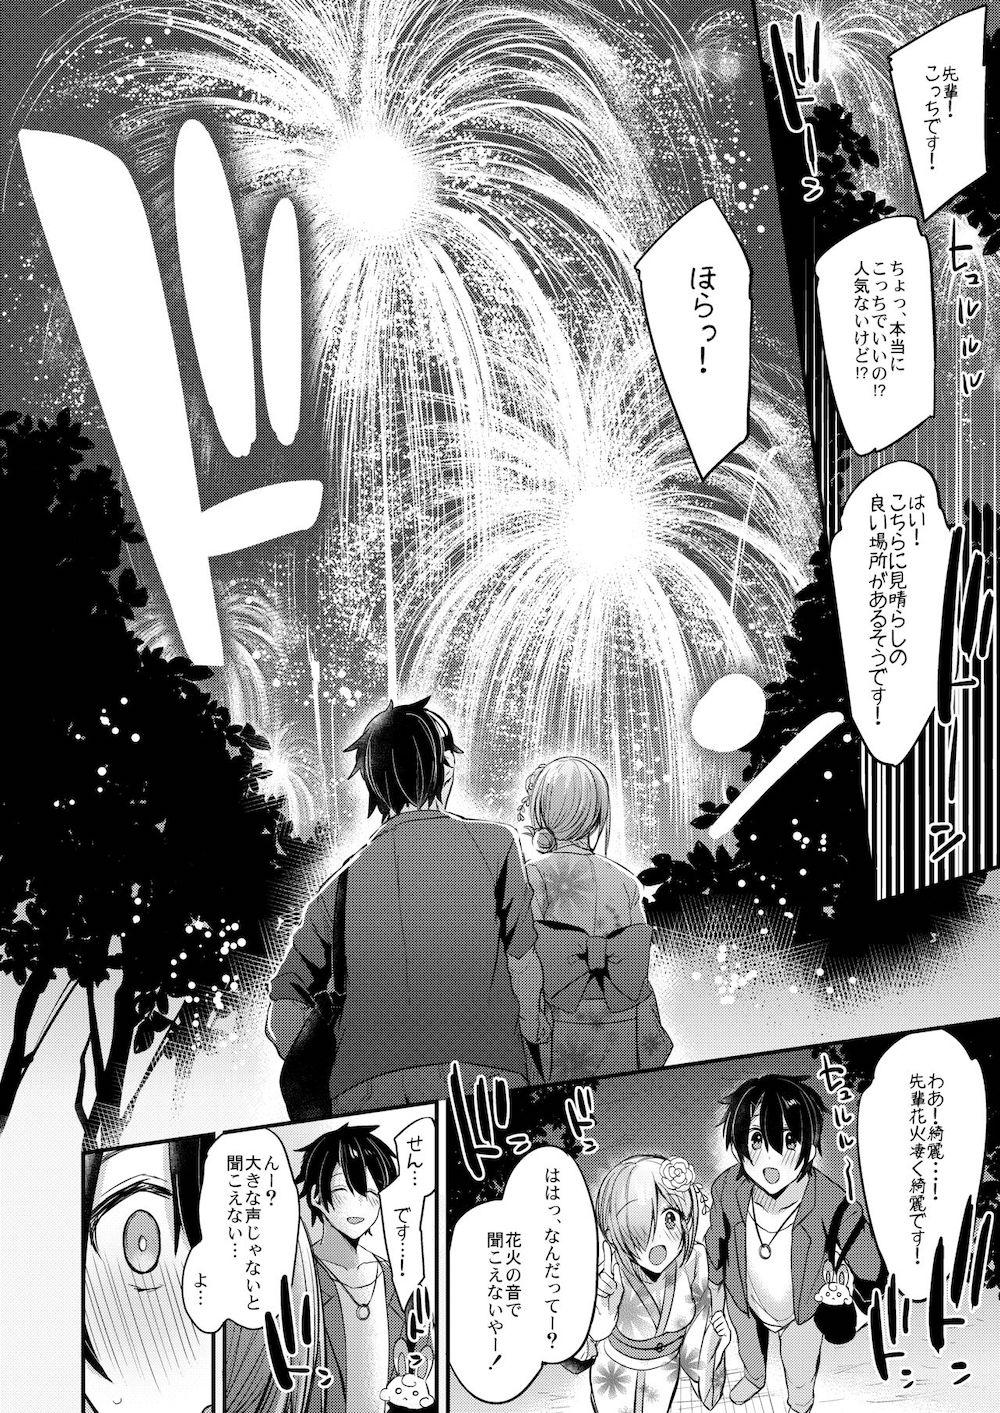 【Fate/Grand Order】イケメンの先輩と2人きりで旅行に出かけたマシュが花火が見える人影の少ない所で浴衣姿でイチャイチャ野外ラブエッチ19